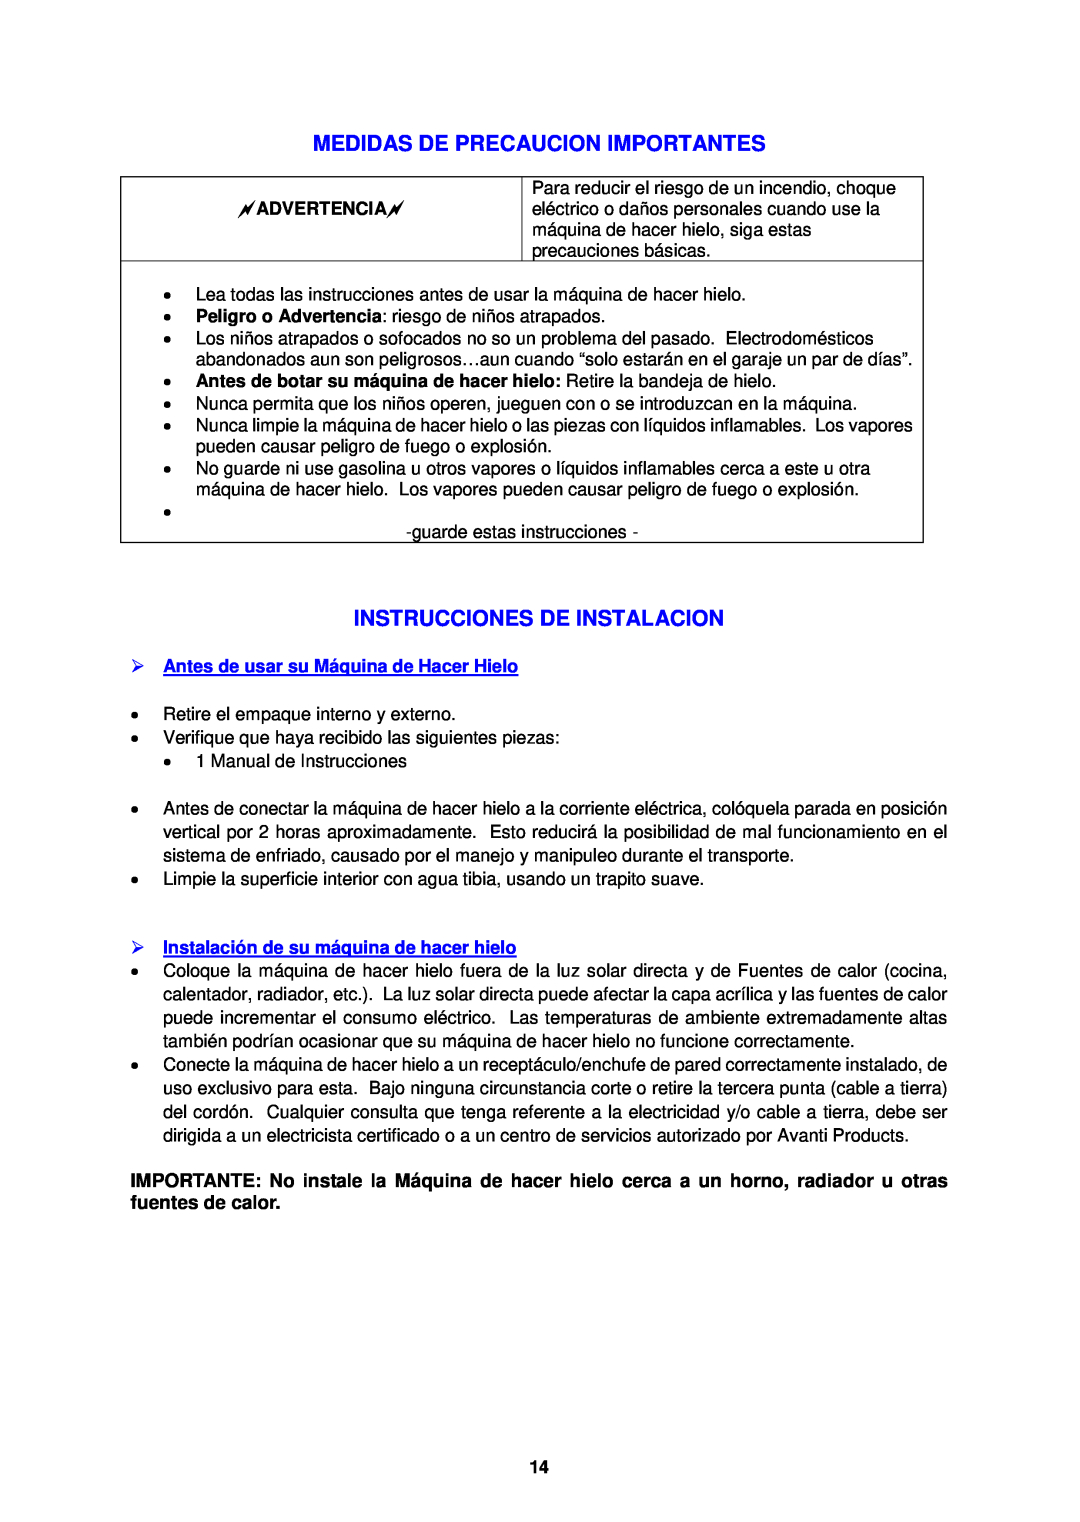 Avanti IM12-IS instruction manual Medidas De Precaucion Importantes, Instrucciones De Instalacion, Advertencia 